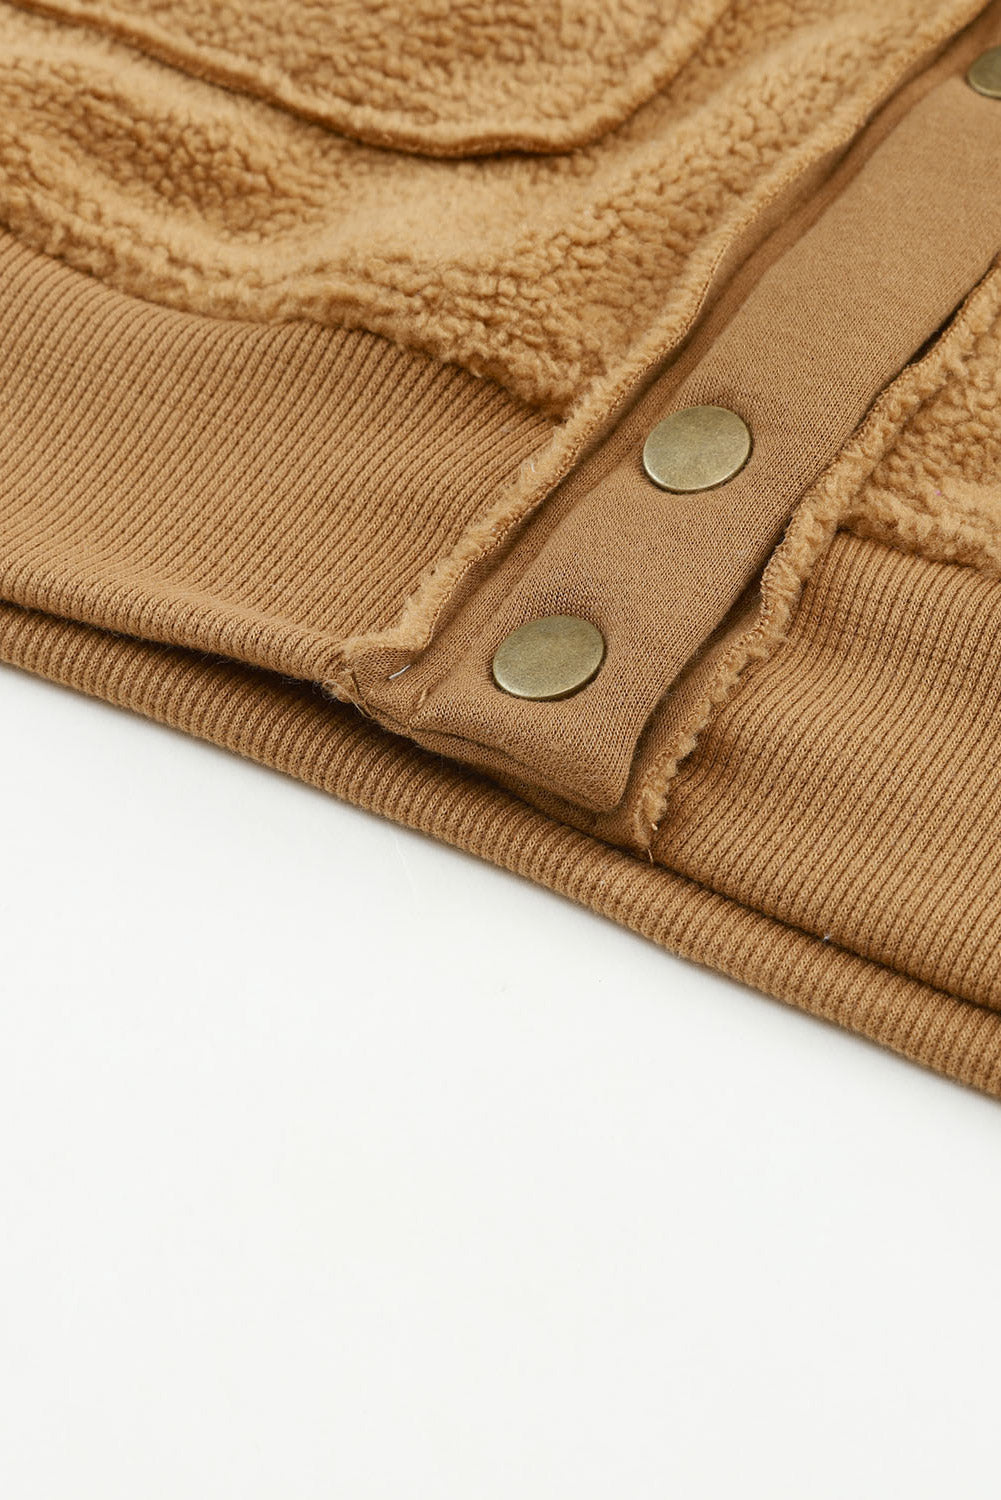 Rjava jakna iz flisa z žepom na zavihek z gumbi in širokim ovratnikom